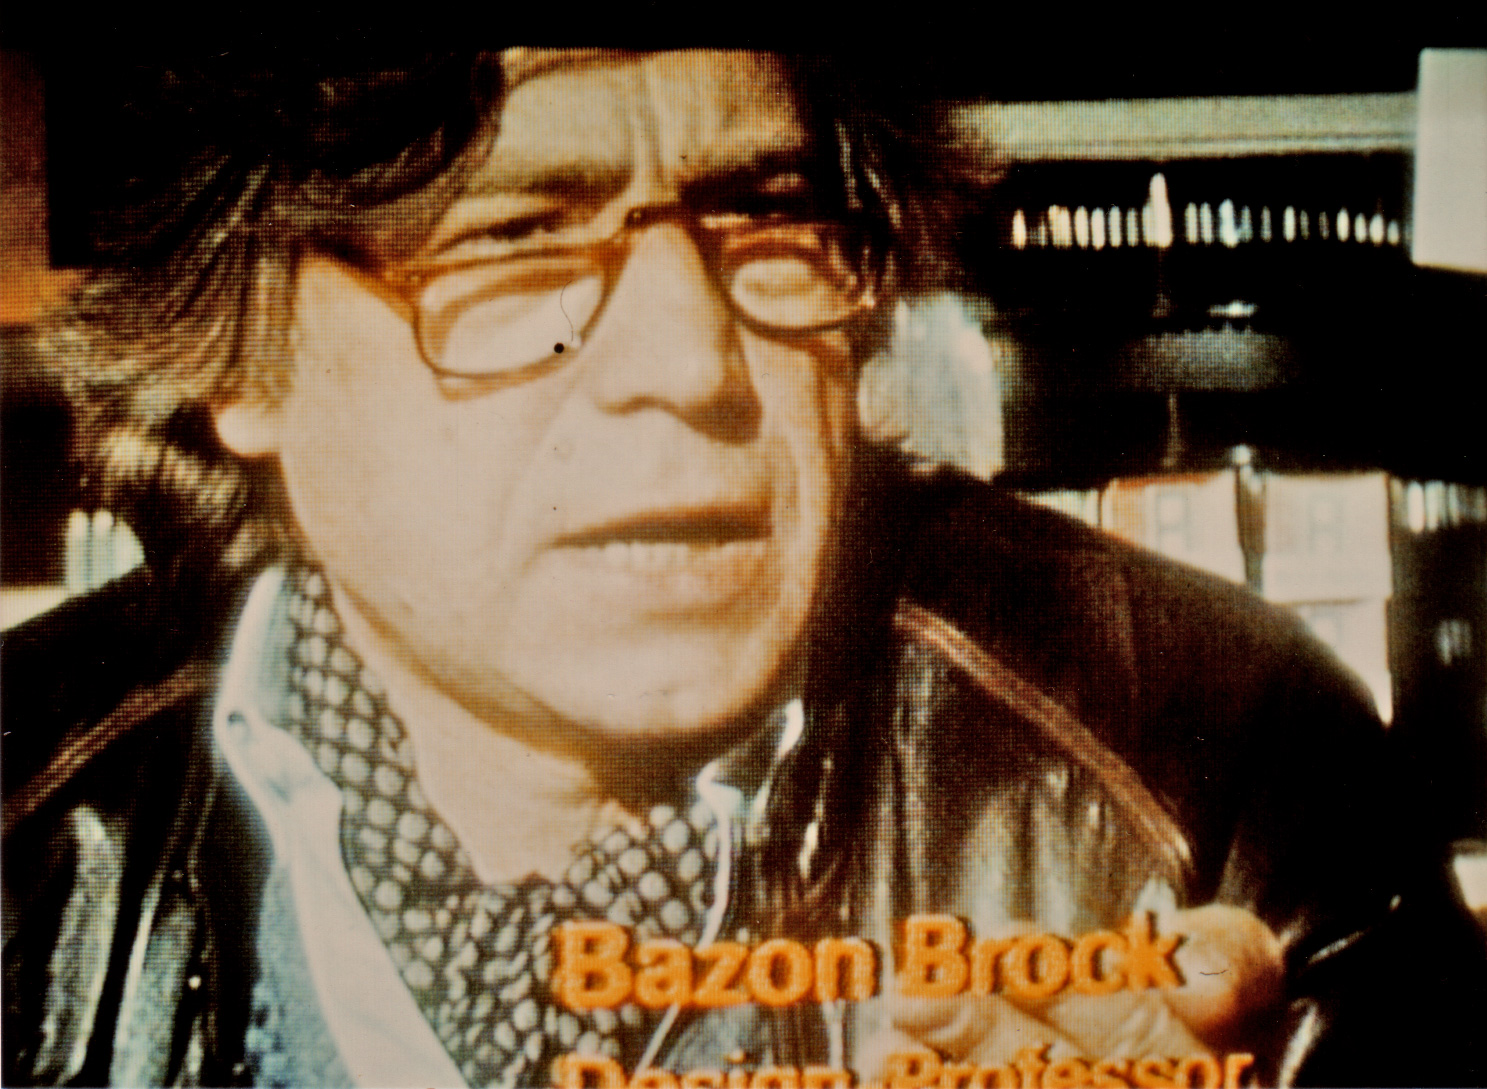 Bazon Brock, Design-Professor, Bild: vom Fernseher abfotografiert.